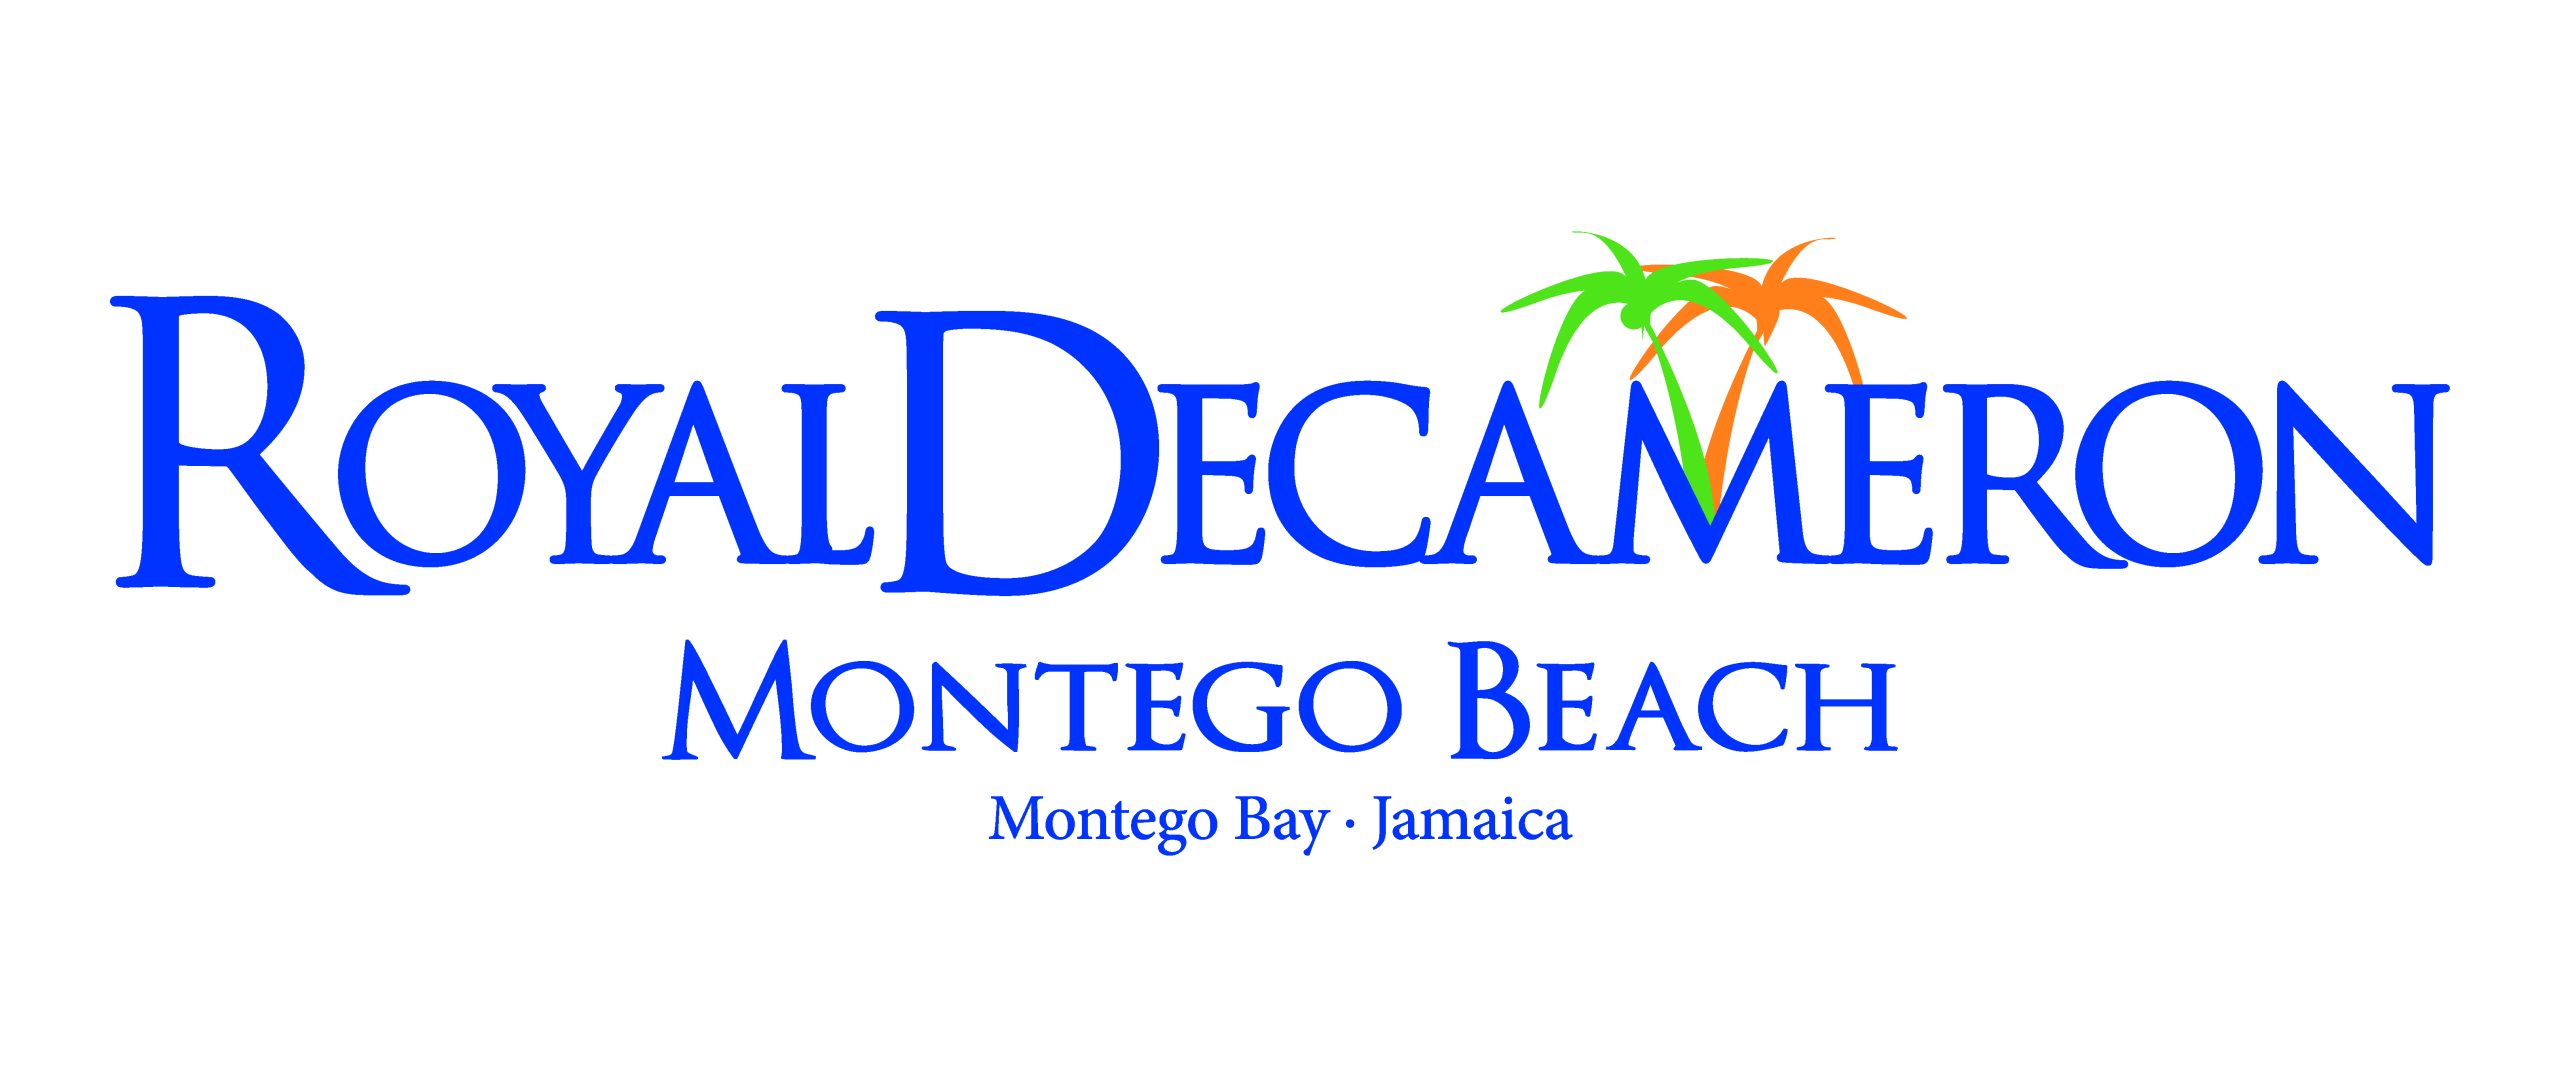 Decameron Montego Beach LOGO